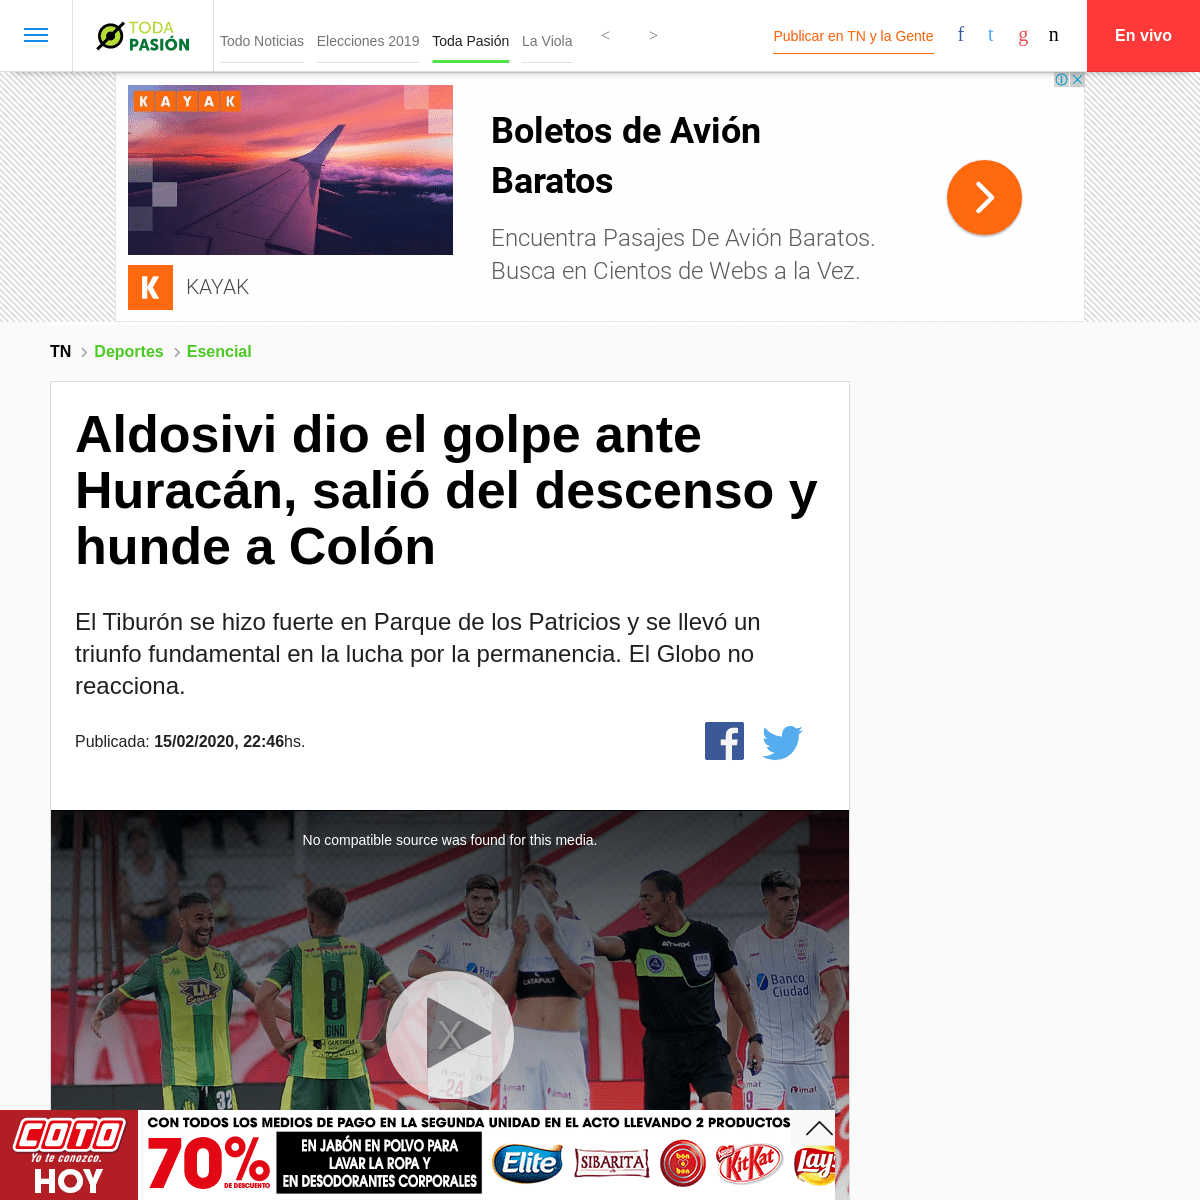 A complete backup of tn.com.ar/deportes/esencial/aldosivi-dio-el-golpe-ante-huracan-salio-del-descenso-y-hunde-colon_1034733